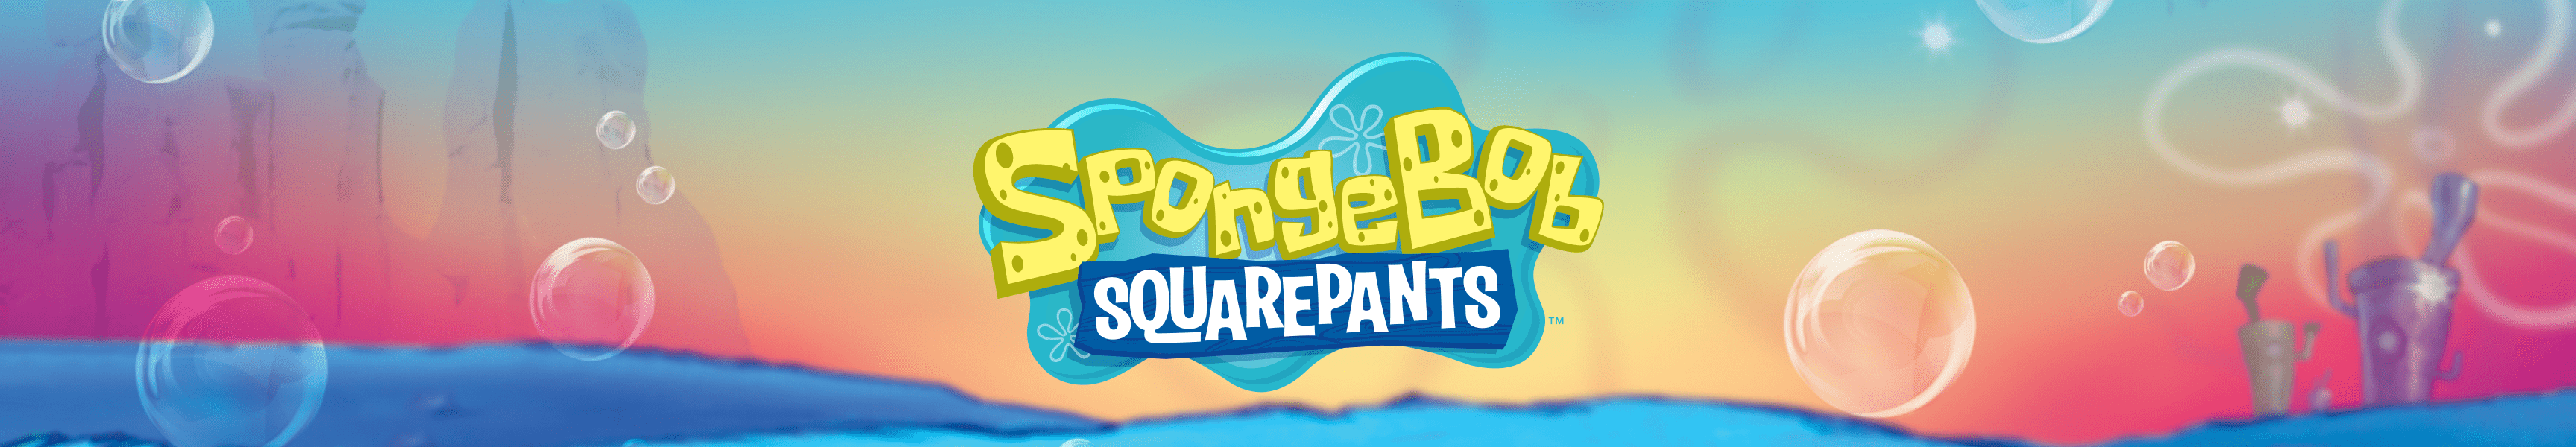 SpongeBob SquarePants Drinkware